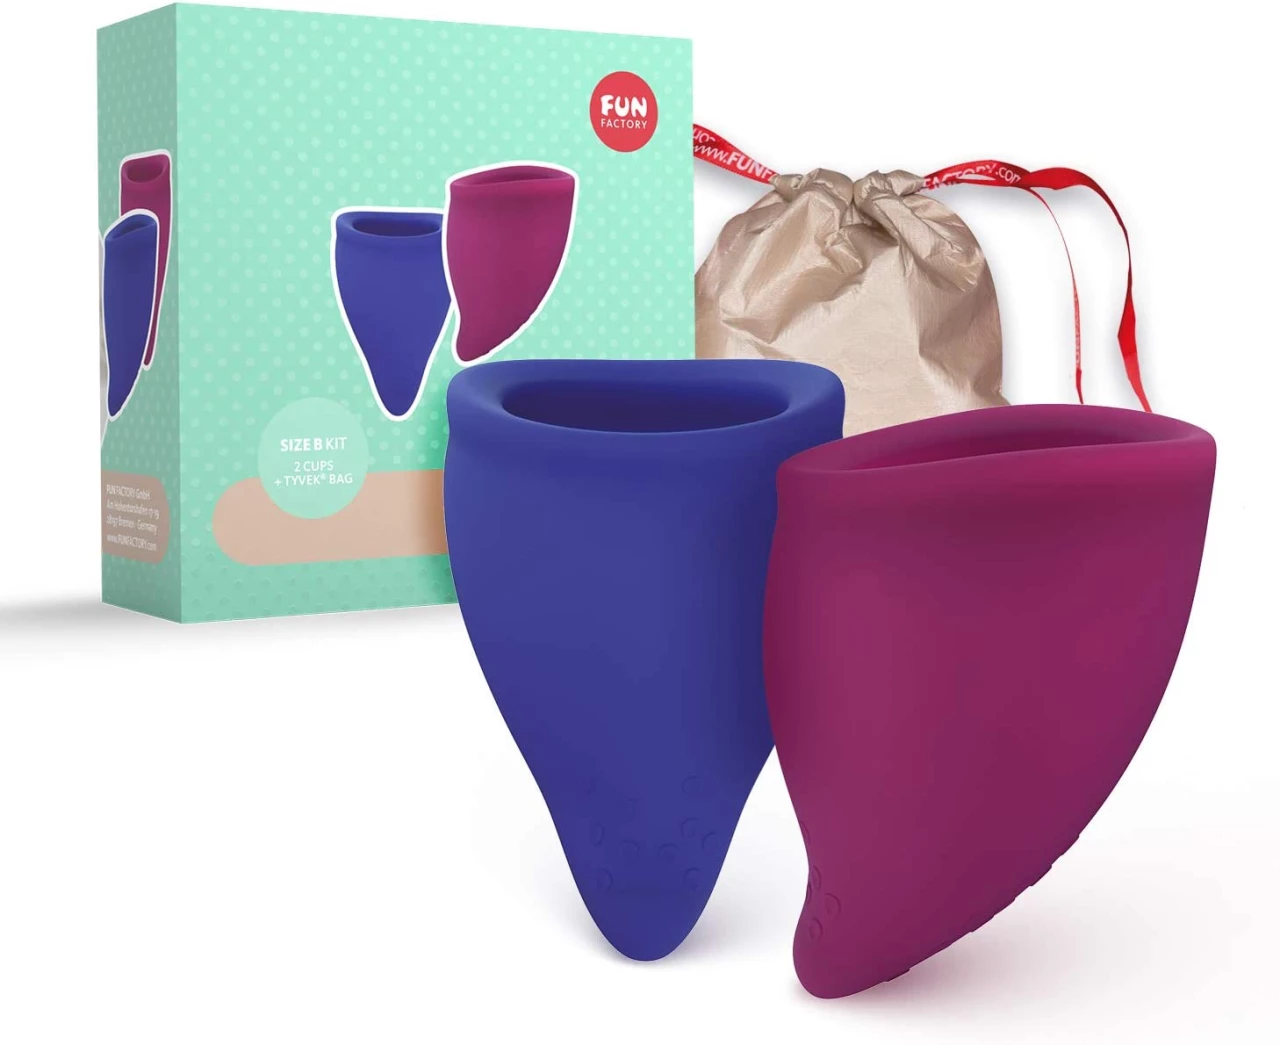 Fun Factory FUN CUP - Copa menstrual talla B silicona medica (incluye 2 copas, neceser e instrucciones) Made in Germany